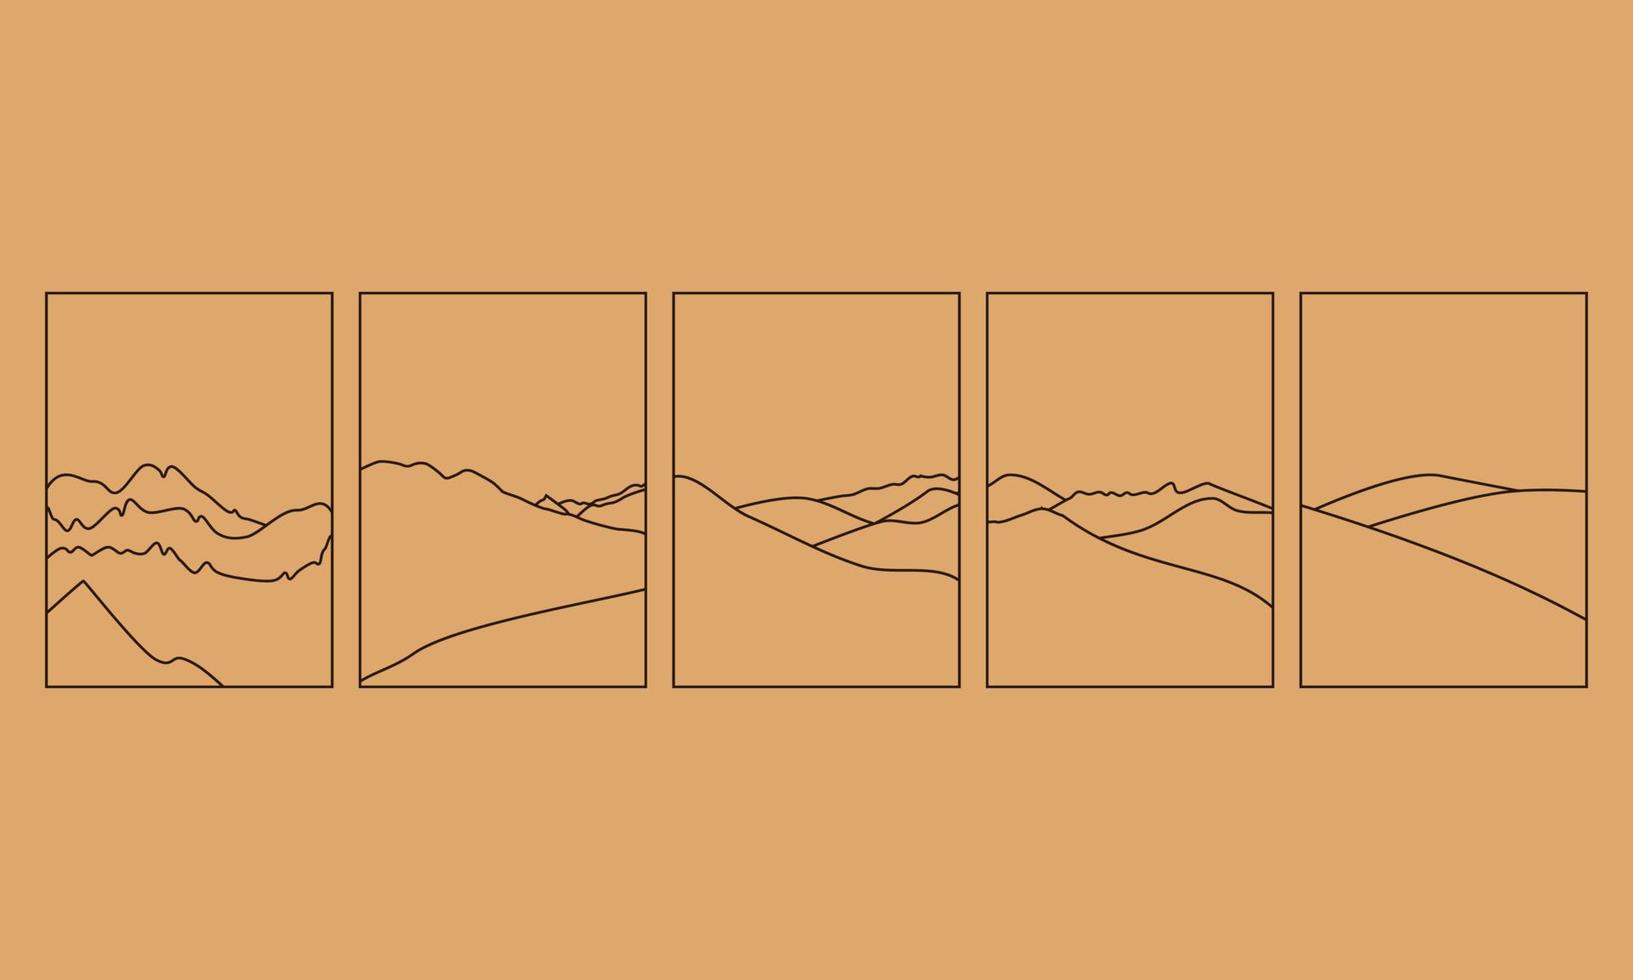 uppsättning enkel vektorillustration i enkel linjär stil, minimalistisk boho-logotyplandskap med berg, kulle och sol. vektor